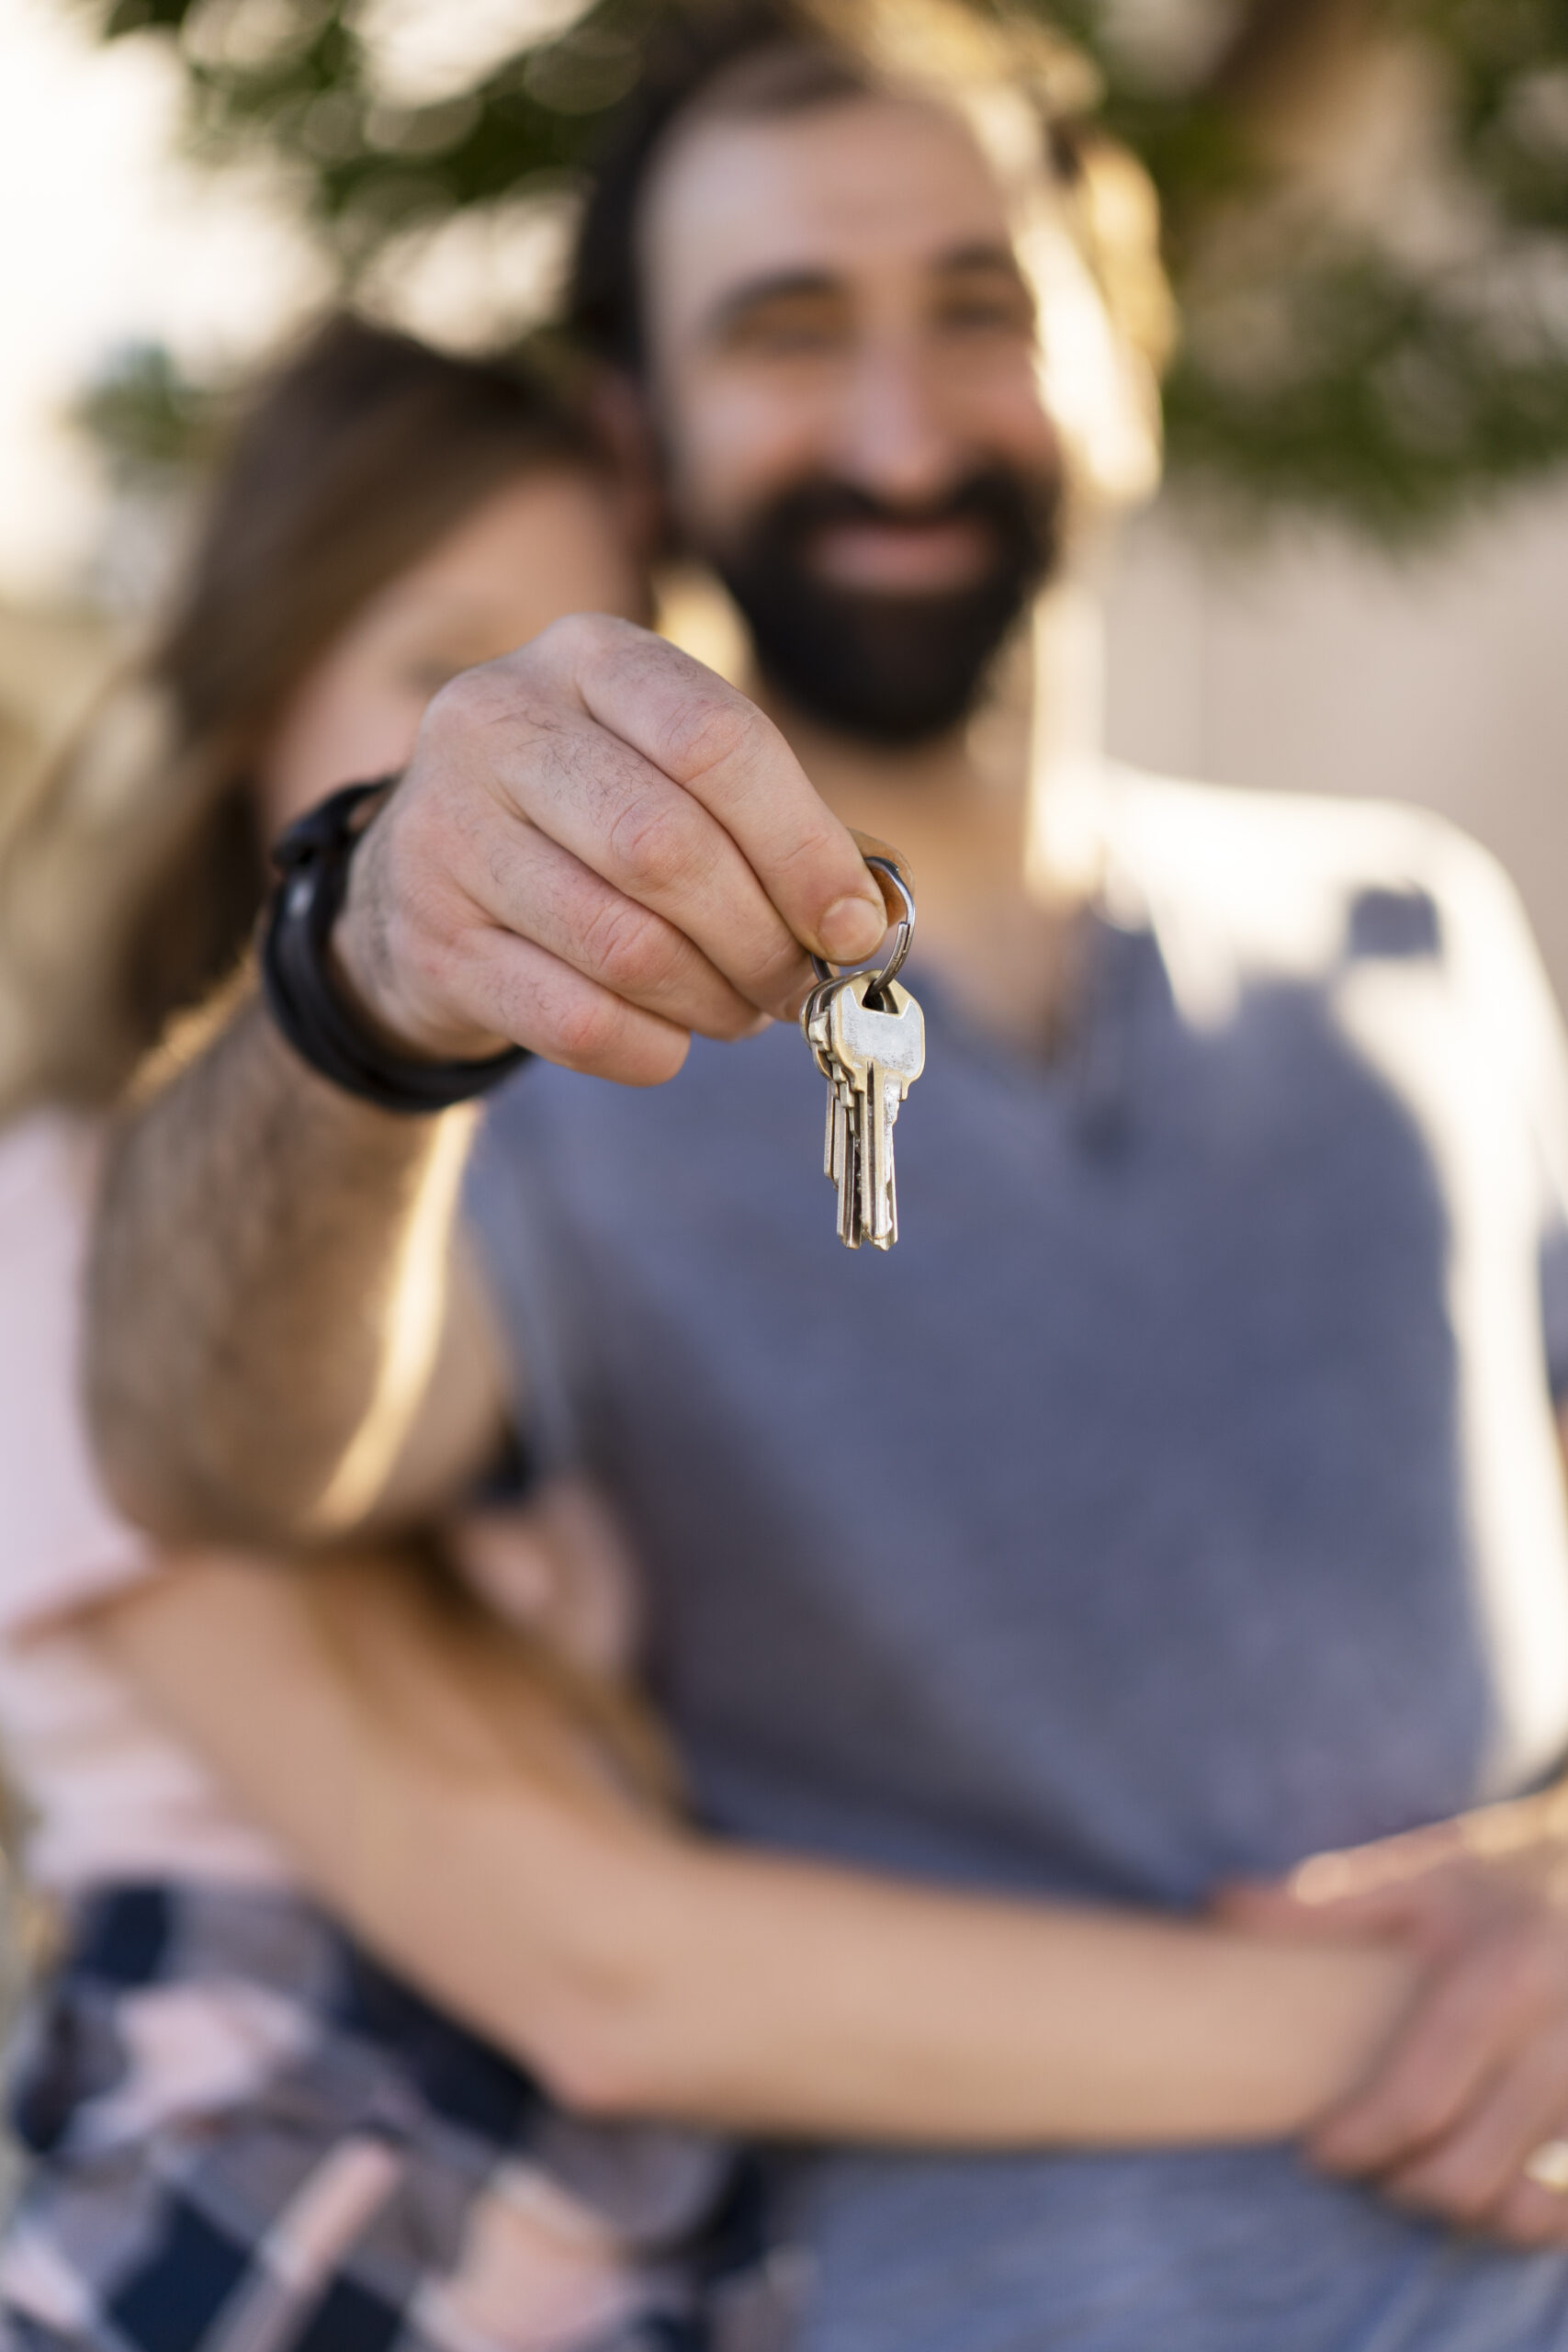 Article – acheter son premier bien immobilier